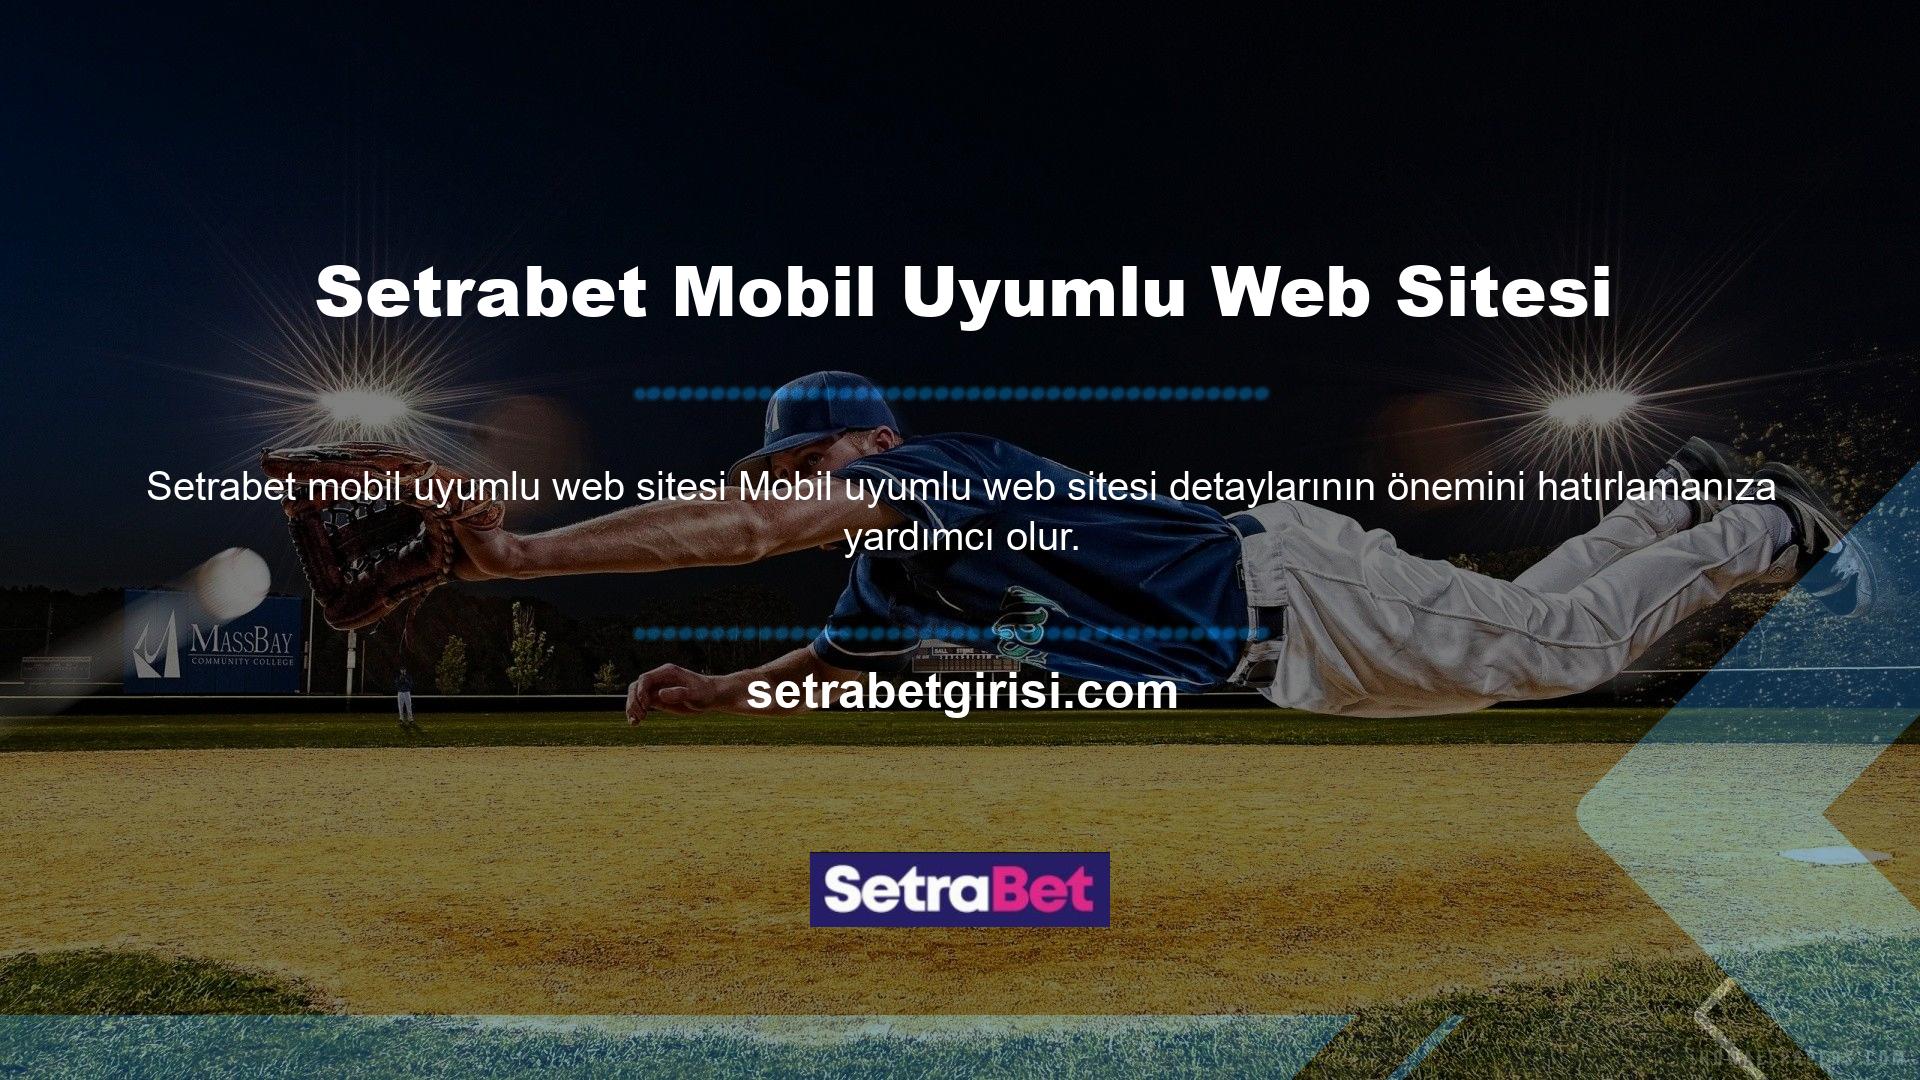 Bu detaylara mevcut Setrabet mobil giriş bağlantısından erişilebilir